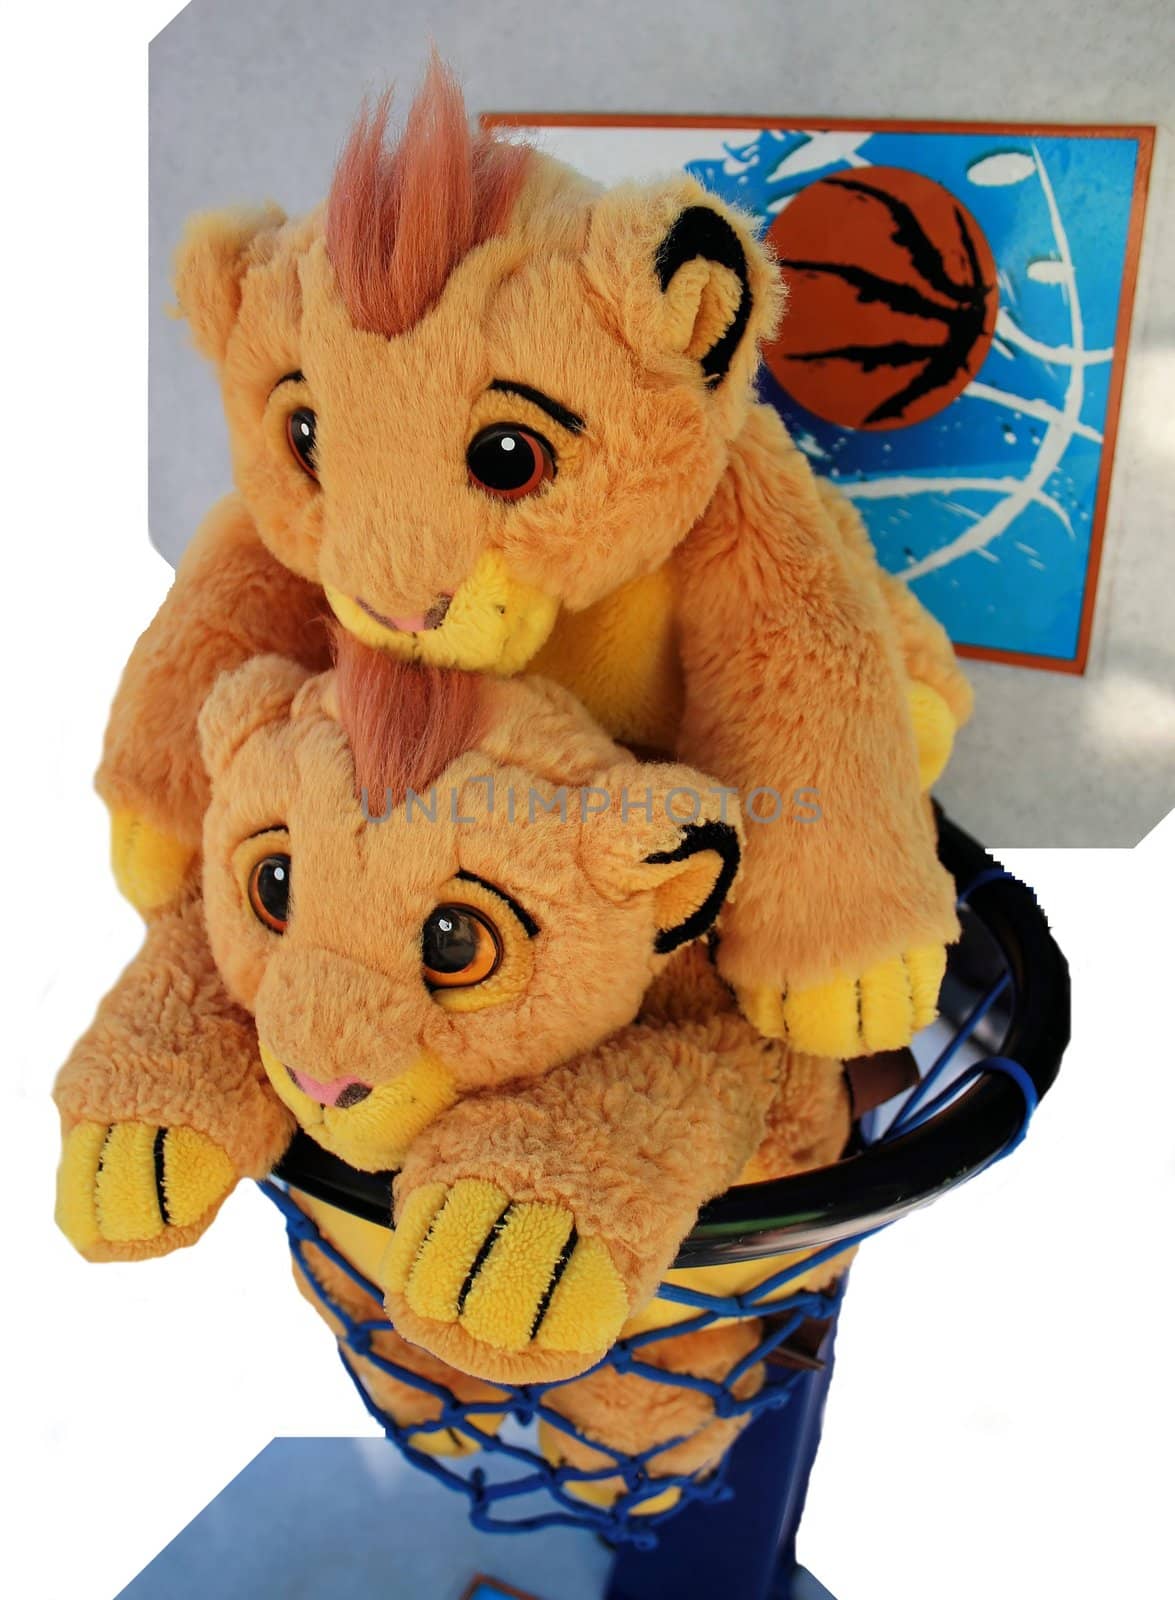 2 cute teddy backpacks in a basketball hoop.